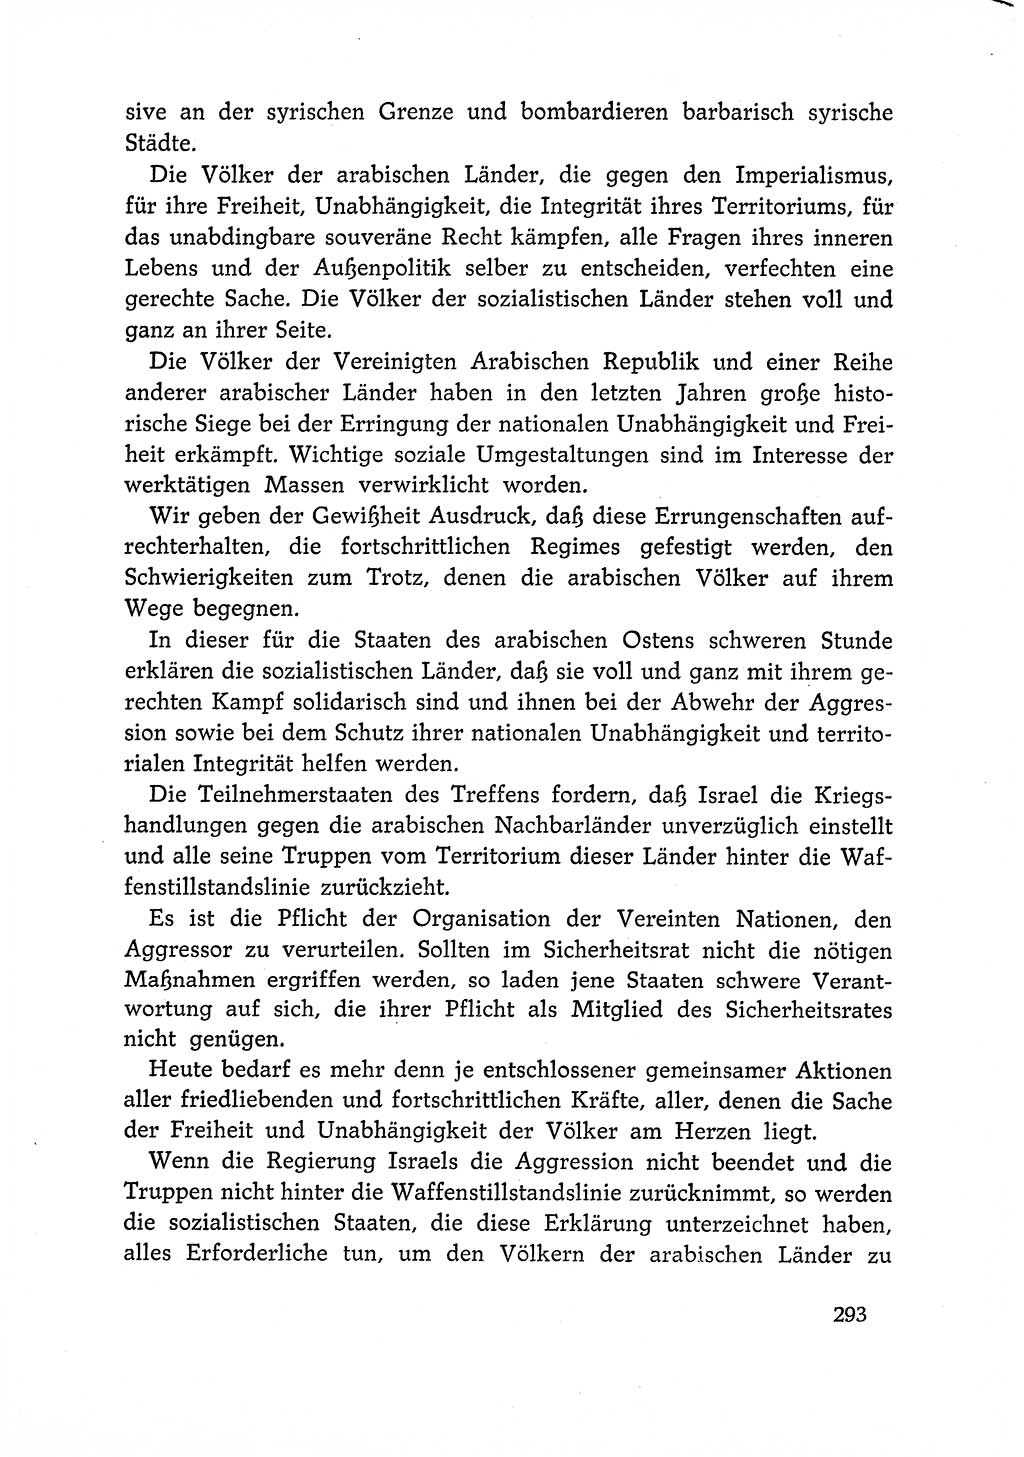 Dokumente der Sozialistischen Einheitspartei Deutschlands (SED) [Deutsche Demokratische Republik (DDR)] 1966-1967, Seite 293 (Dok. SED DDR 1966-1967, S. 293)